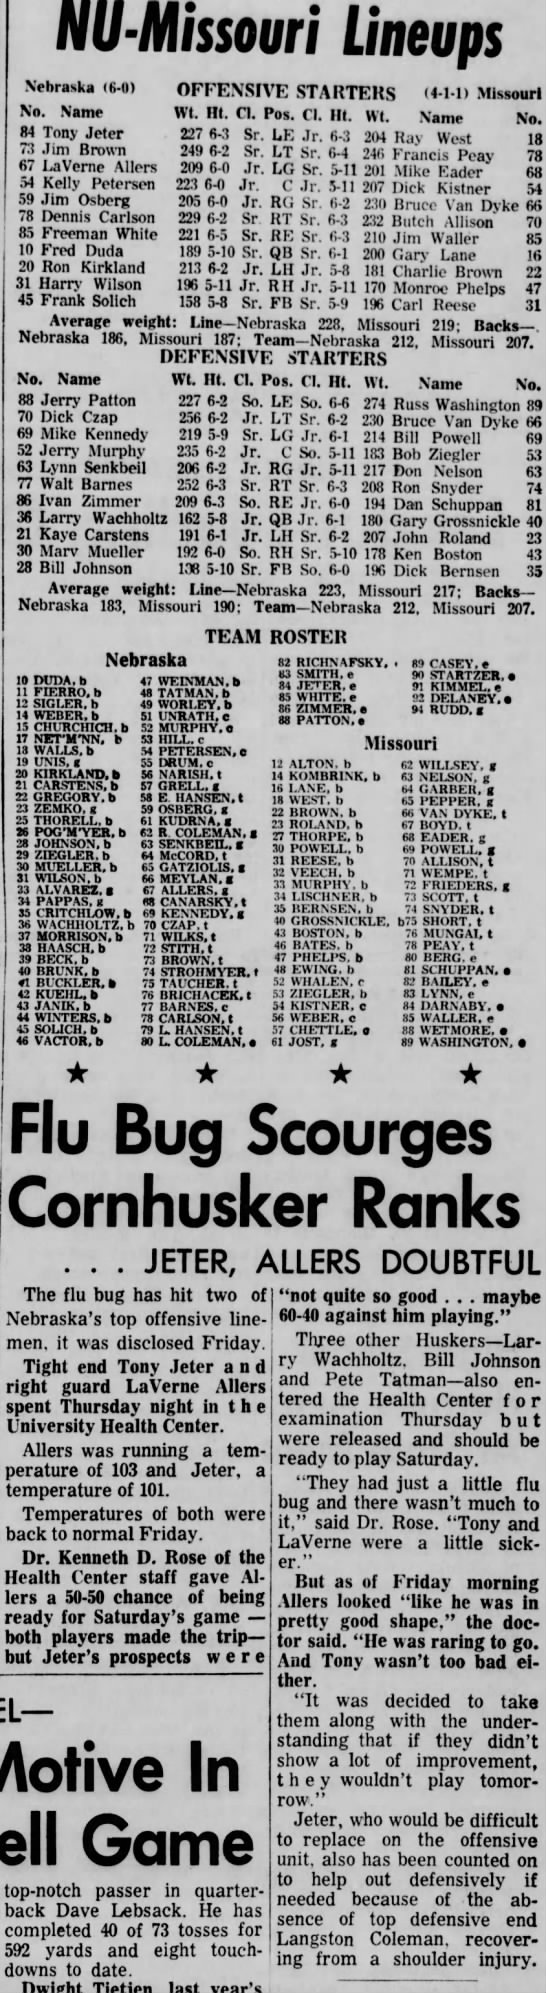 1965 Nebraska-Missouri game lineups - 